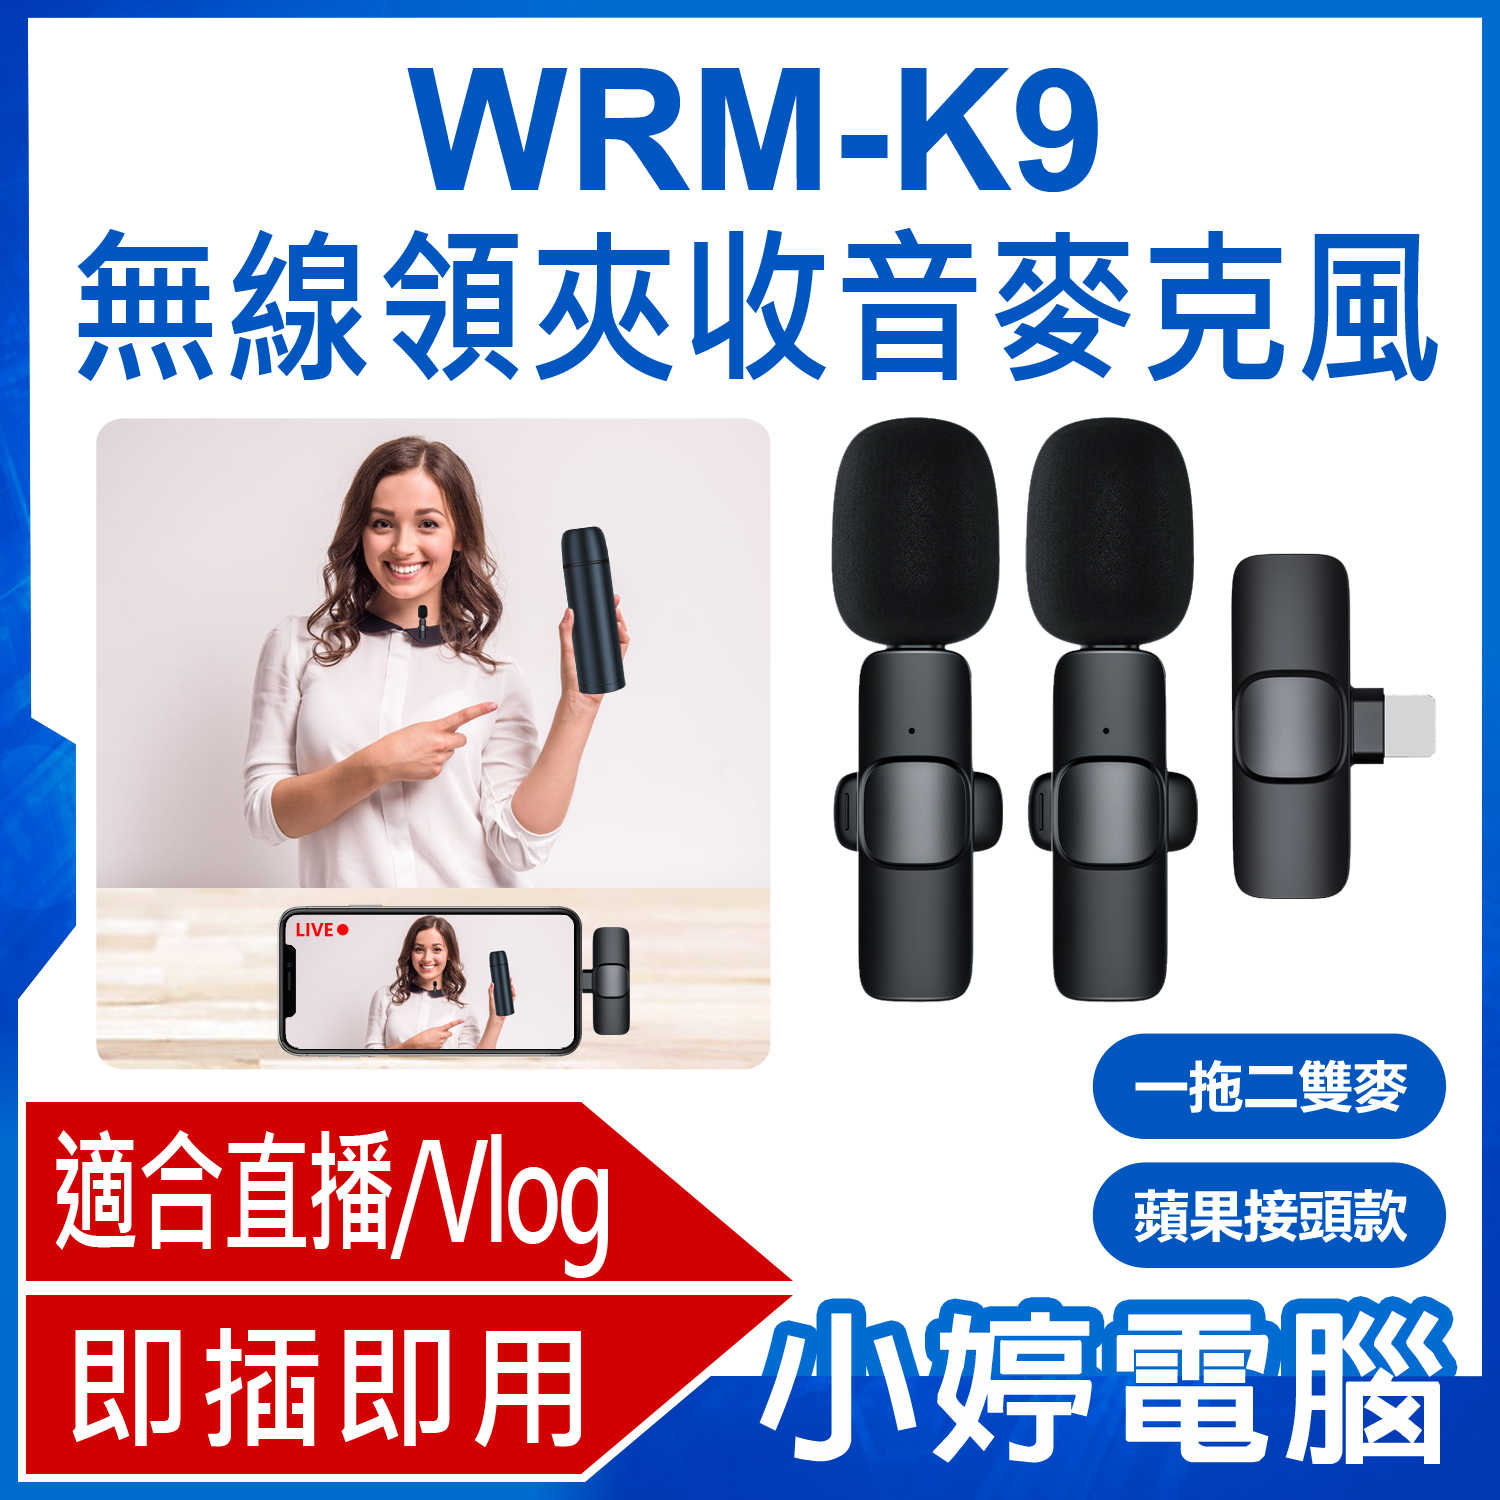 【小婷電腦】WRM-K9 蘋果接頭款 一拖二雙麥 直播網美大推 無線領夾收音麥克風 Vlog採訪